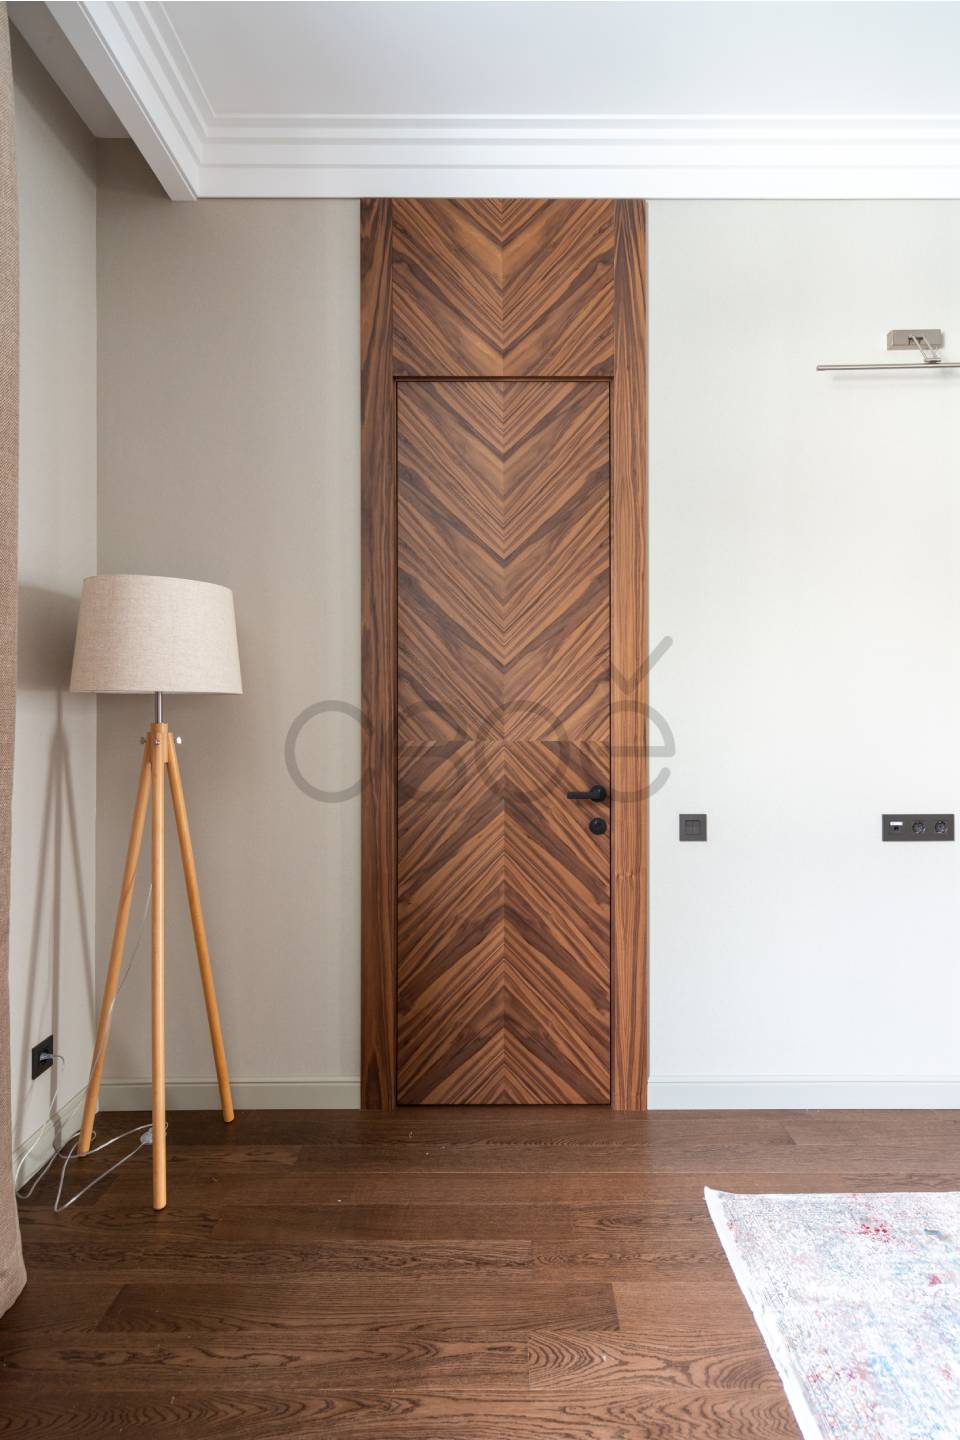 Добротные и стильные двери «Невада» в окружении современного интерьера